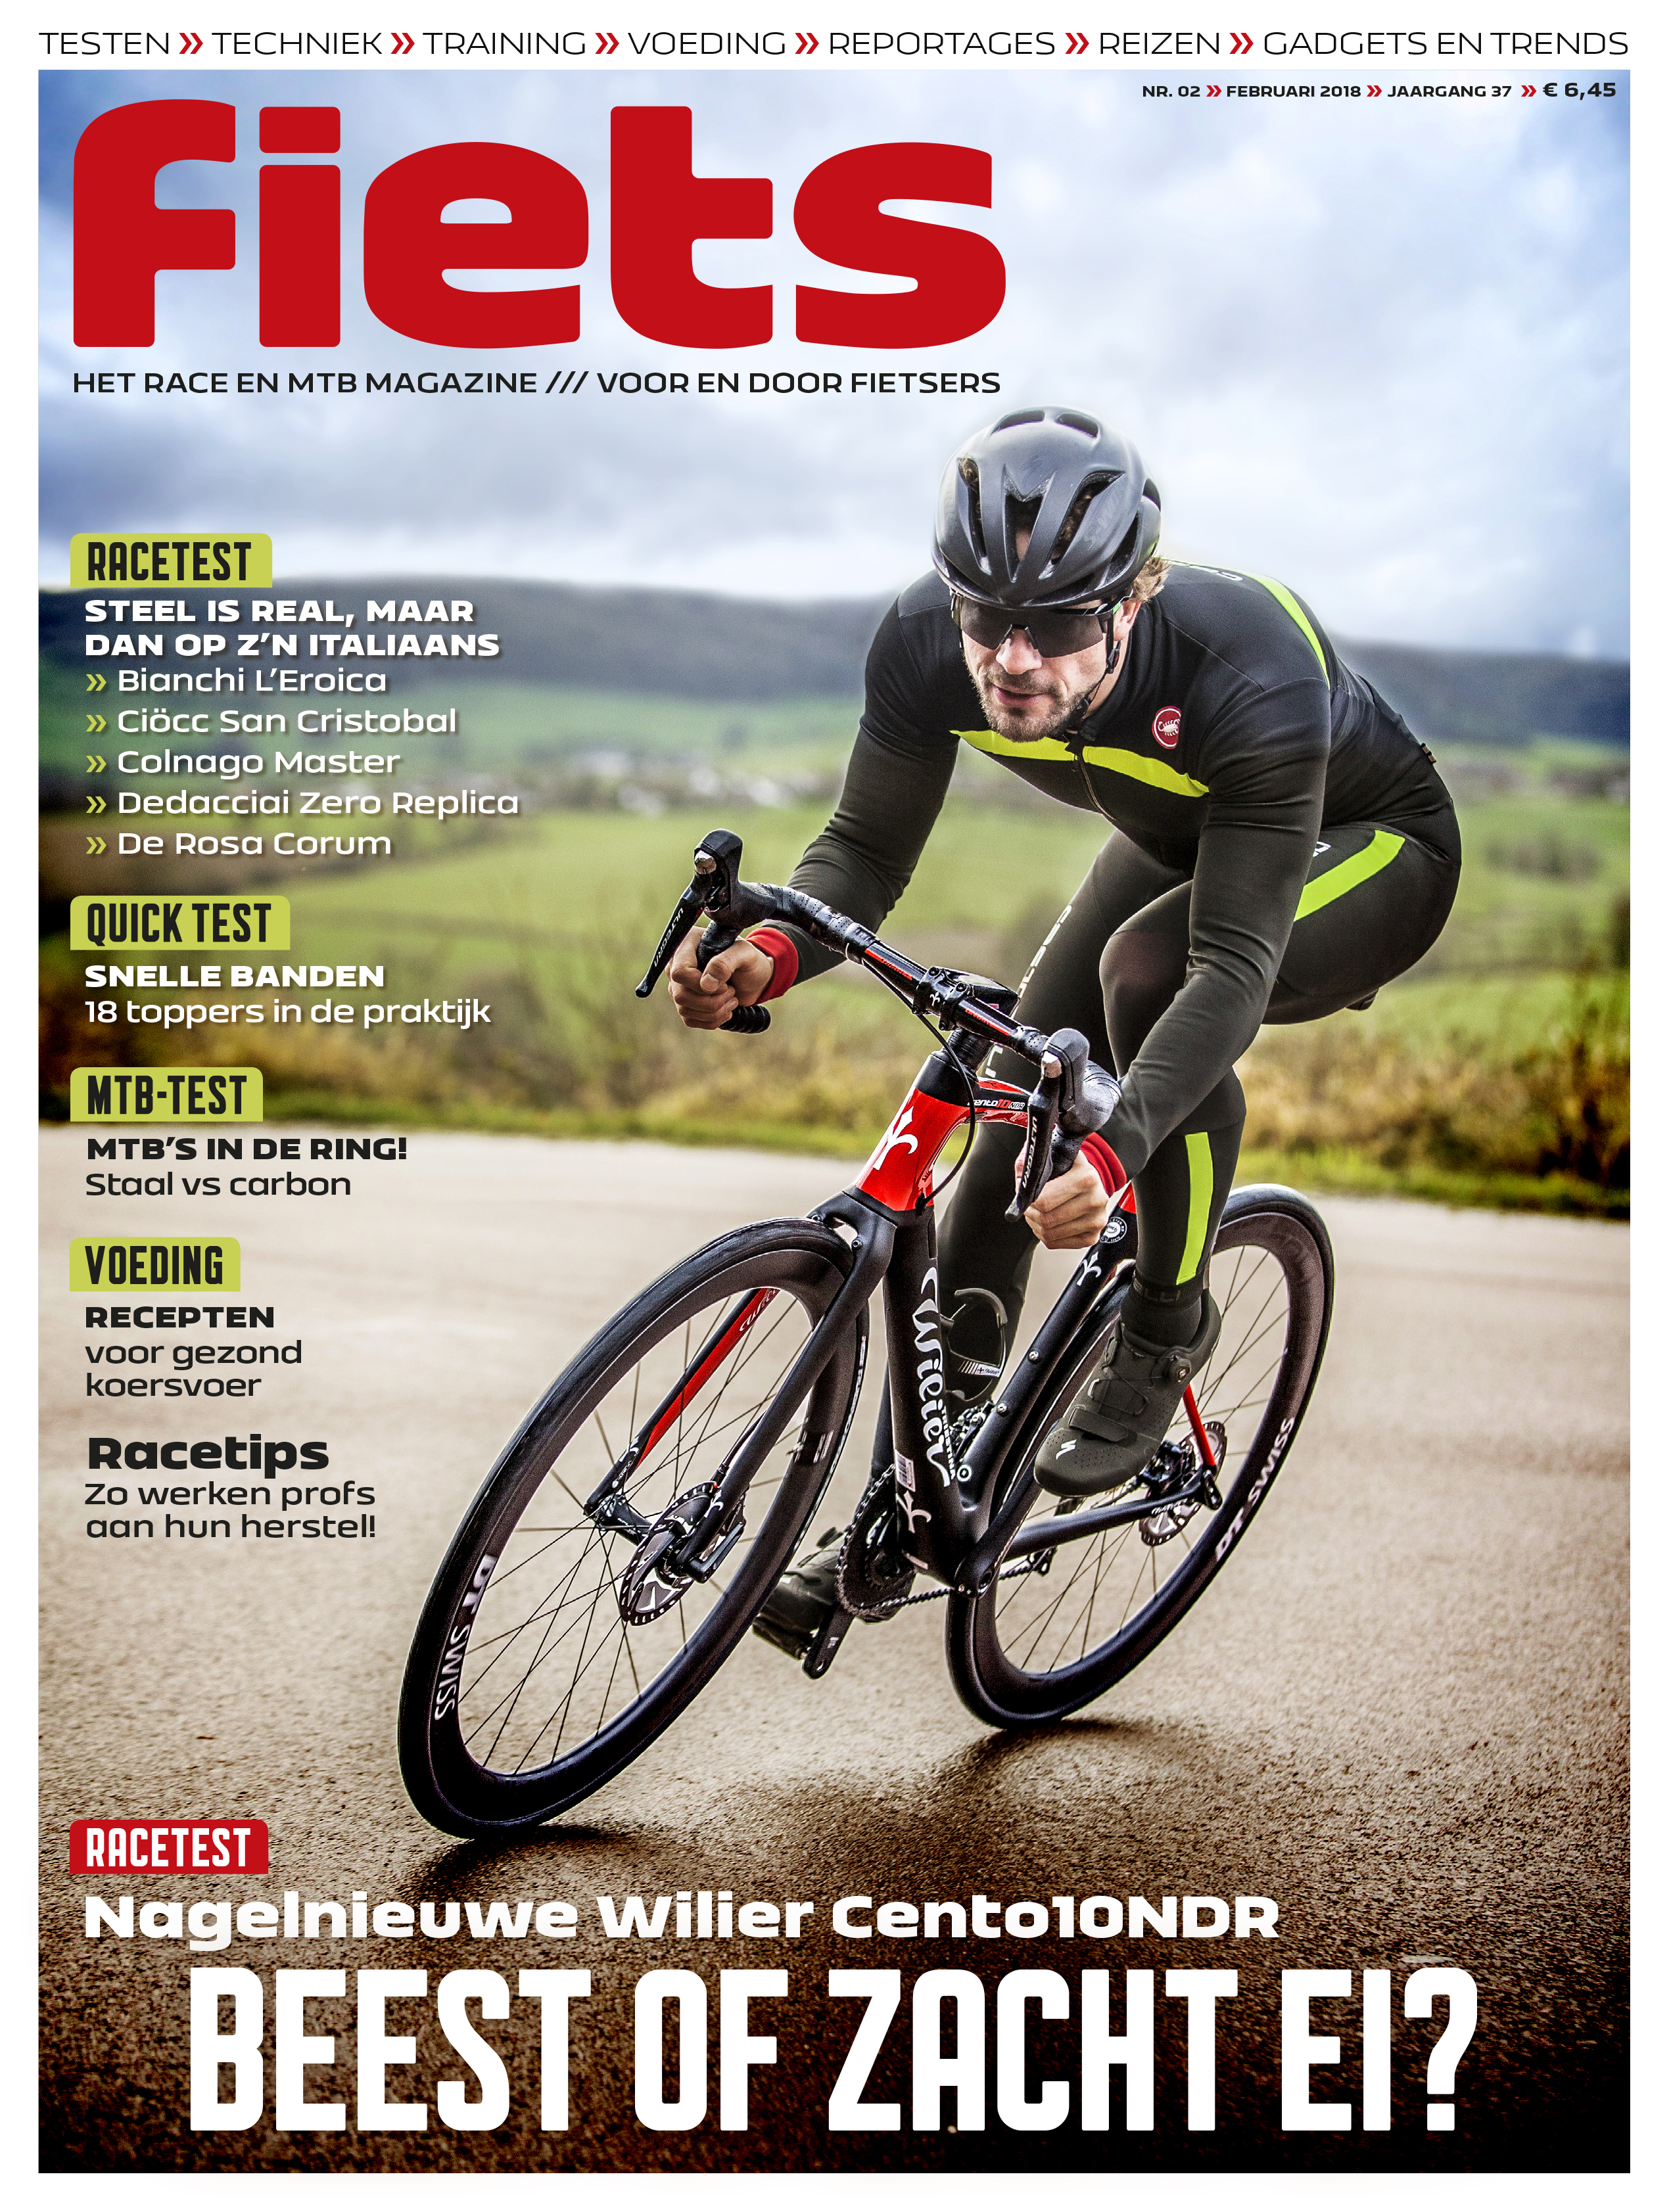 Afbeeldingsresultaat voor fiets magazine covers